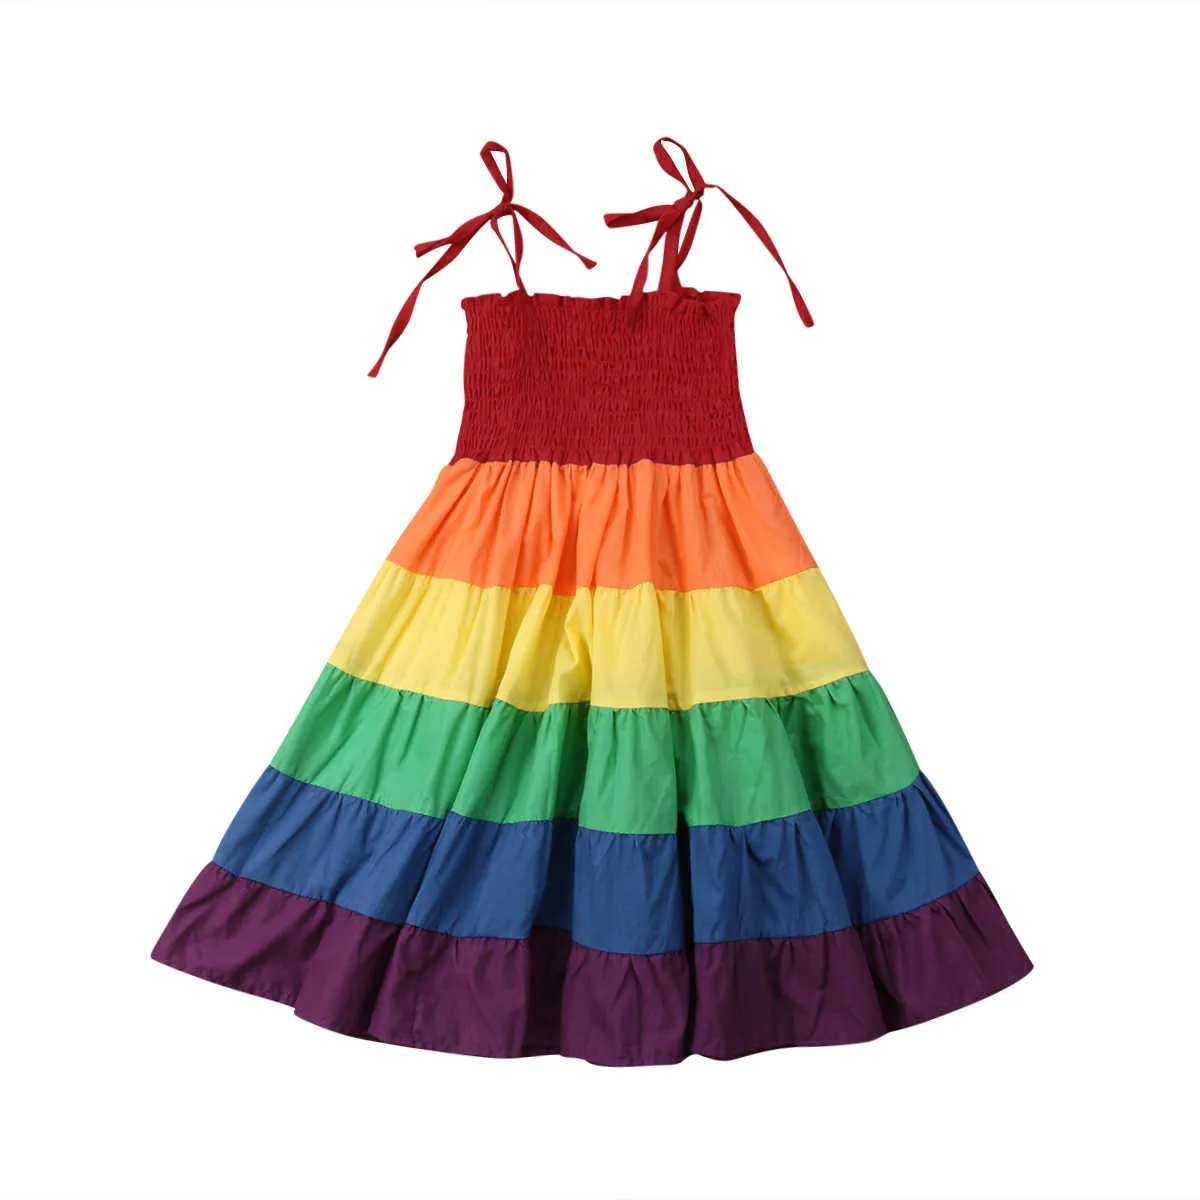 Новый летний милый младенческий ребенок ребенок девочки платье радуги полосатый печать оборками a-line платье Sundress Outfit 2-7y q0716